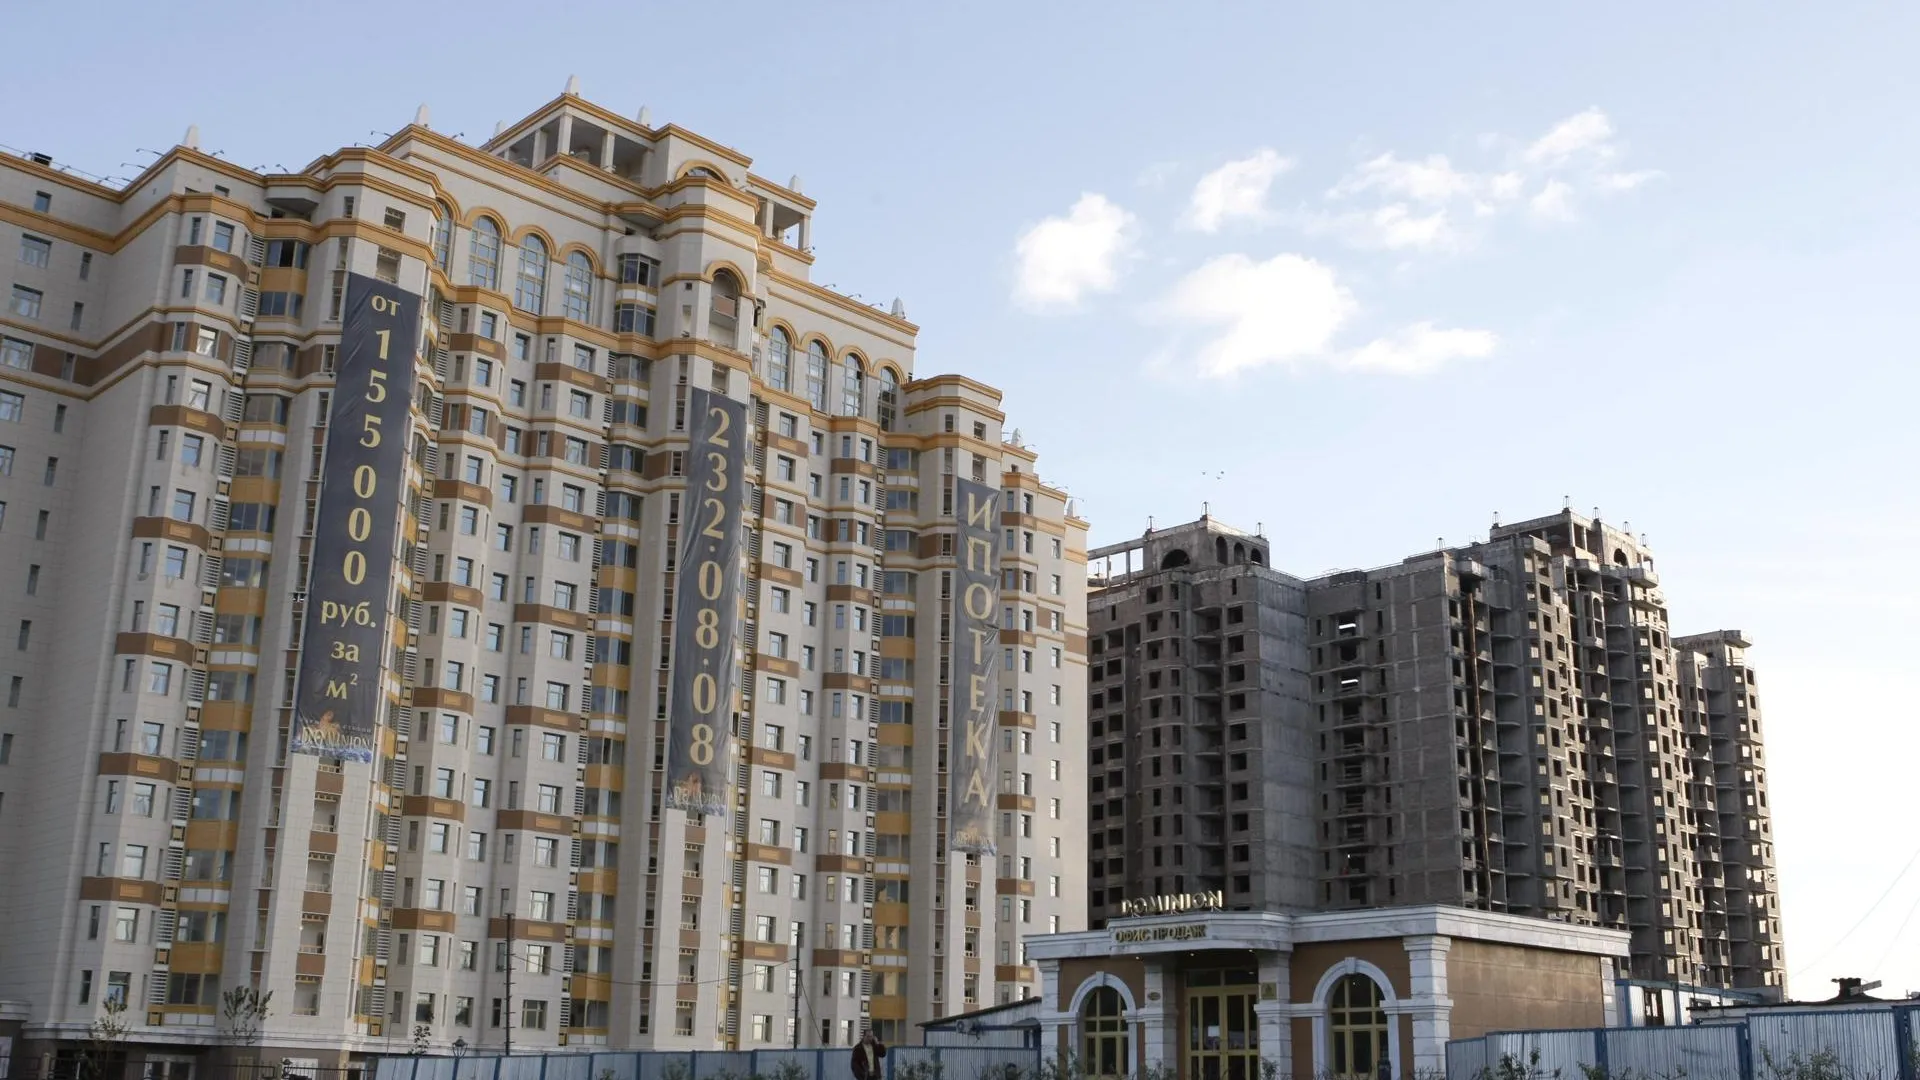 Число сделок по покупке жилья в Подмосковье упало в сентябре на 16%